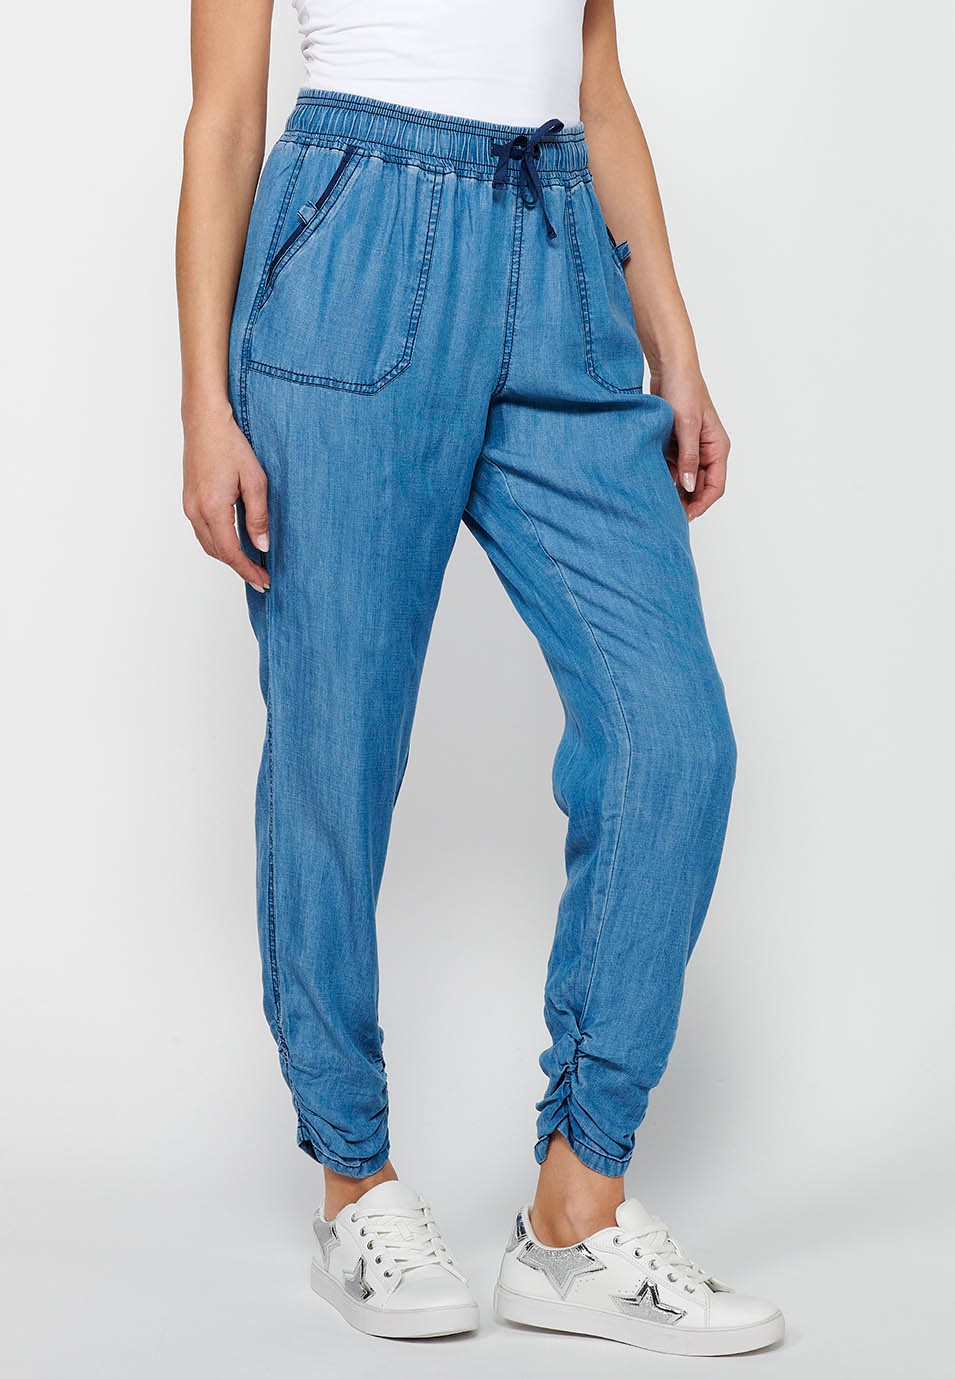 Pantalón largo jogger con Acabado rizado y Cintura engomada con Cuatro bolsillos, dos traseros con solapa de Color Azul para Mujer 5